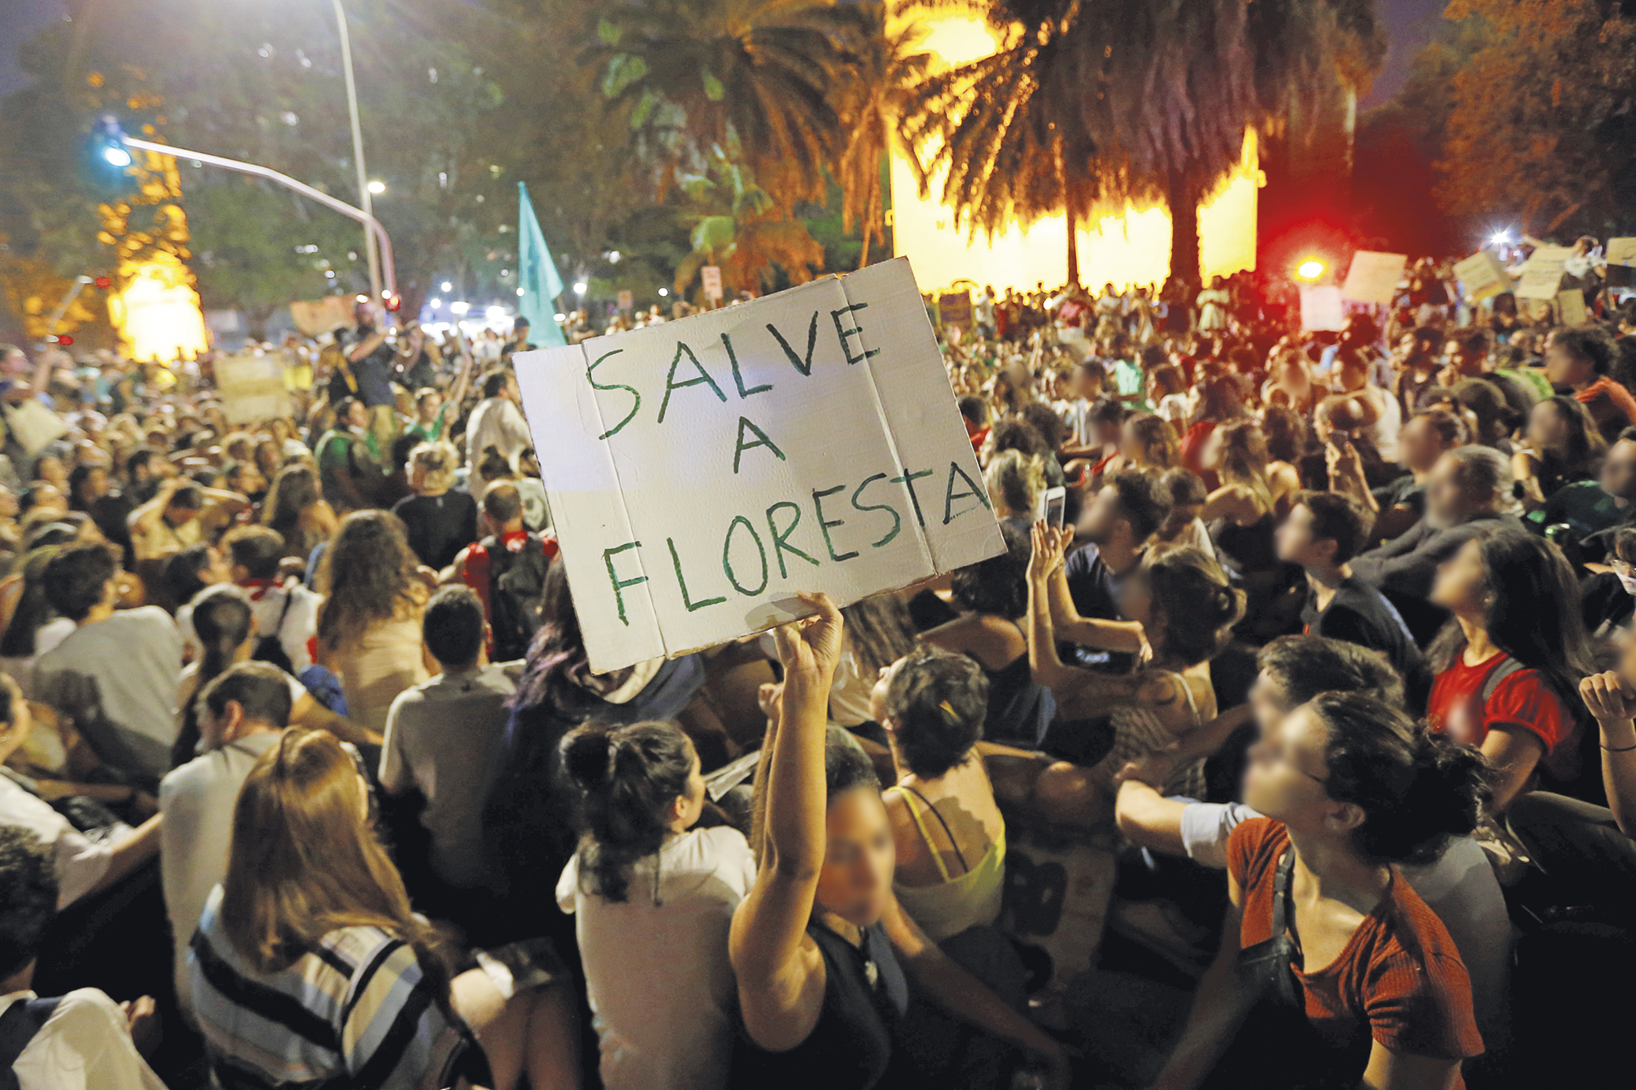 Fotografia. Uma manifestação com muitas pessoas, uma delas segura um cartaz com a frase: SALVE A FLORESTA.